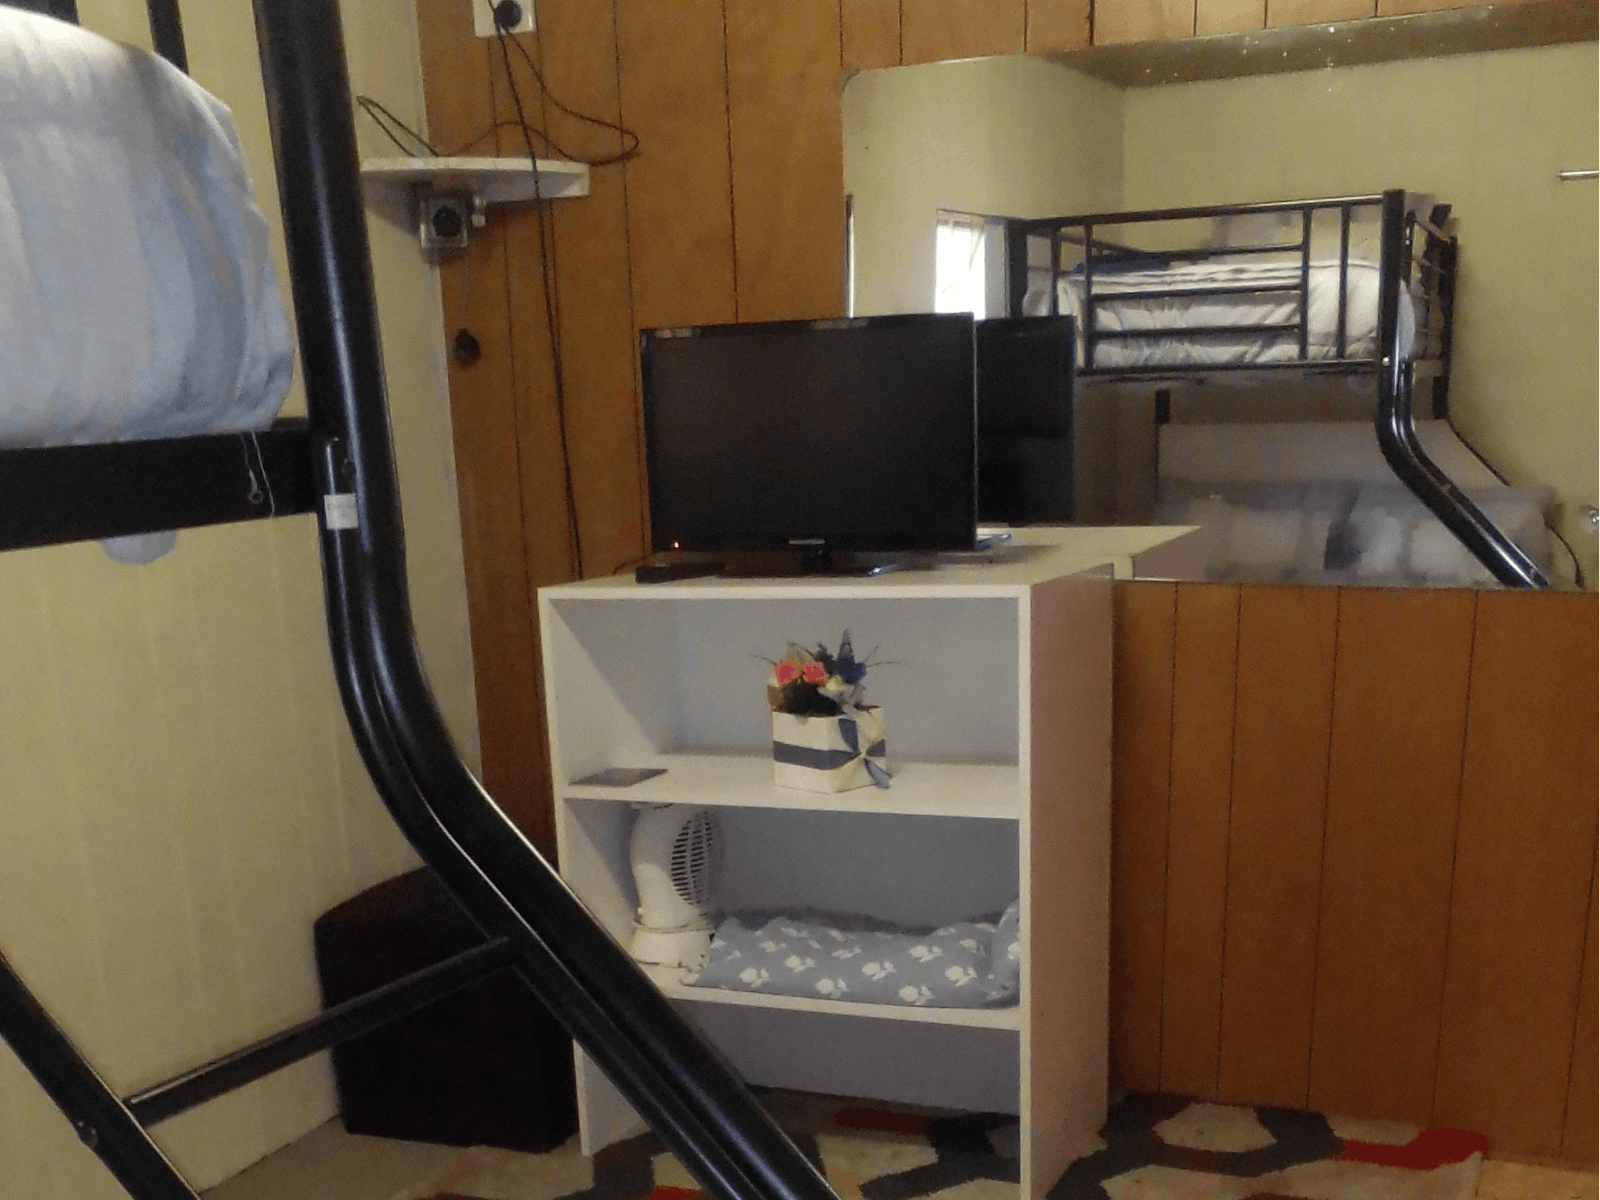 TV in Bedroom